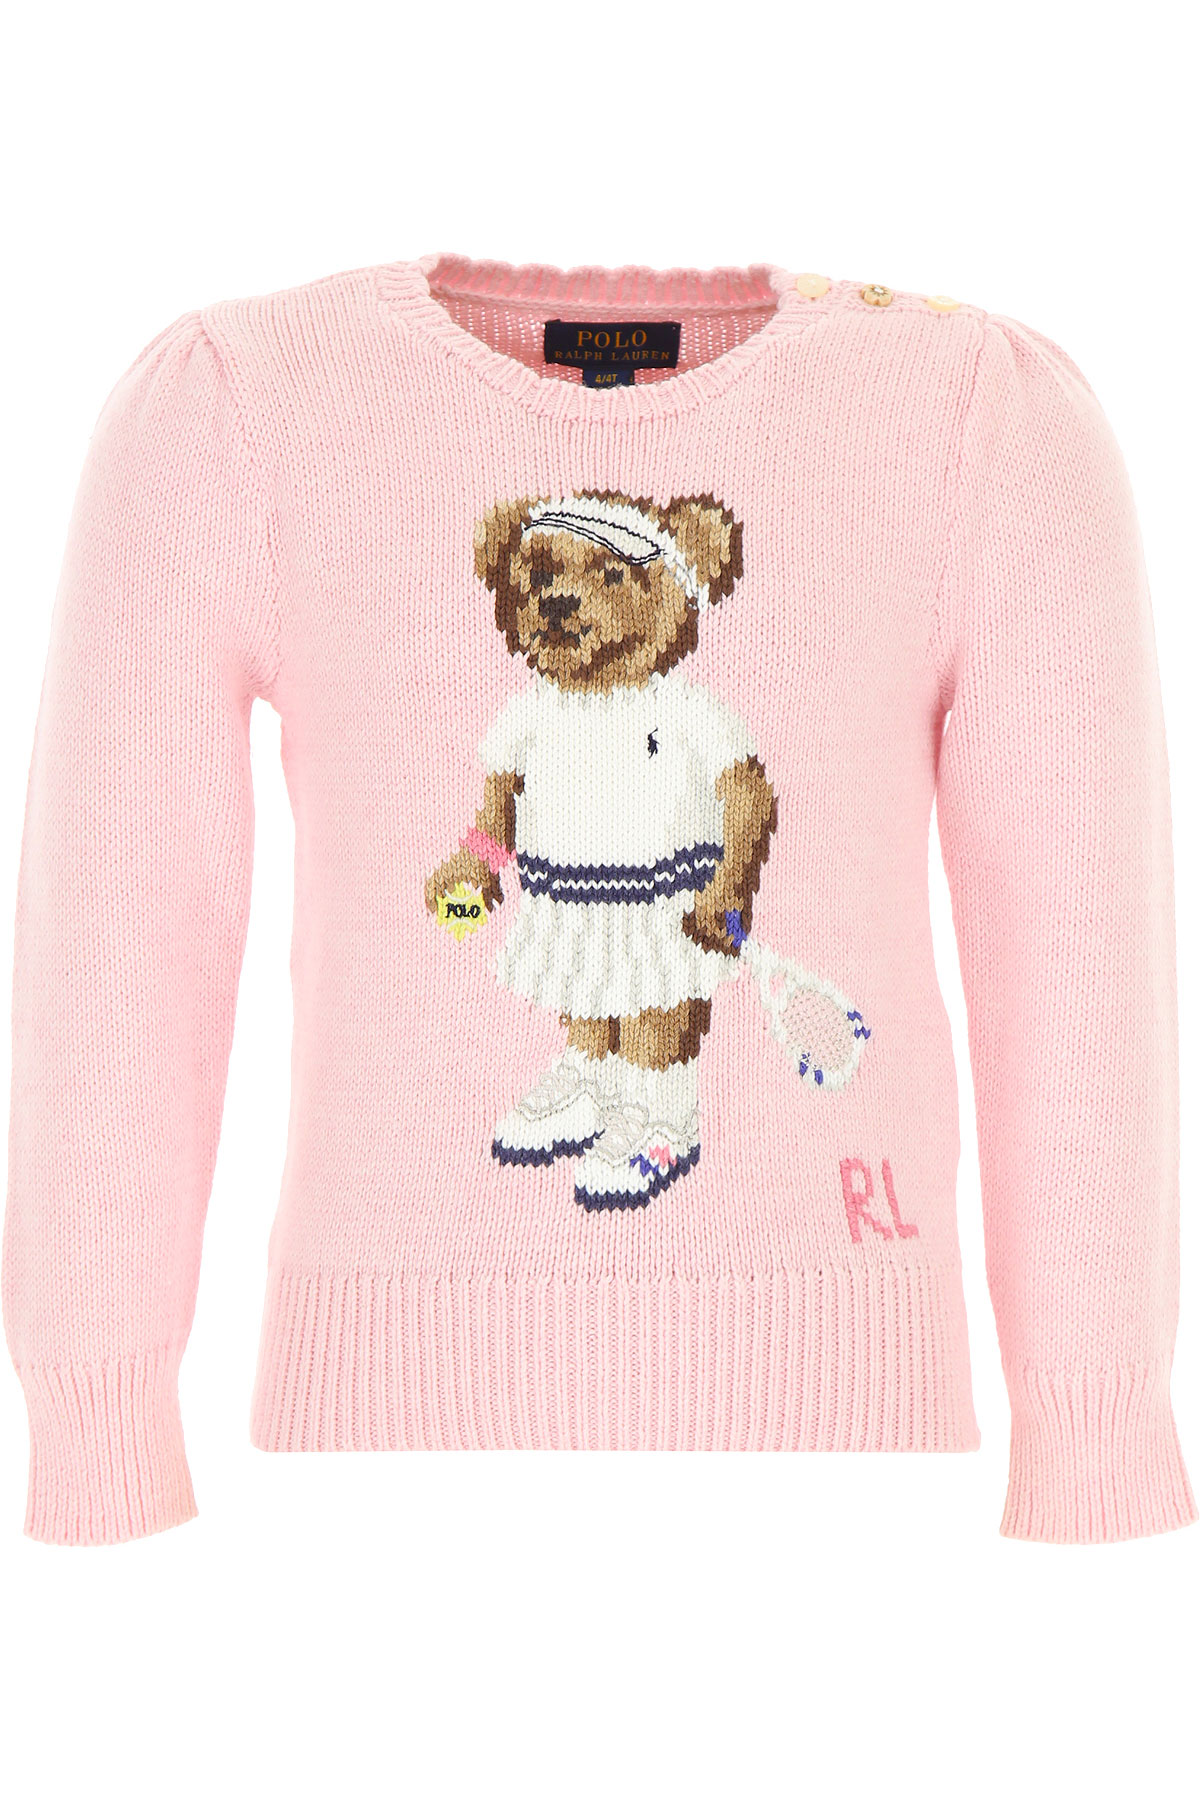 Ralph Lauren Kinder Pullover für Mädchen Günstig im Sale, Pink, Baumwolle, 2017, 4Y 5Y